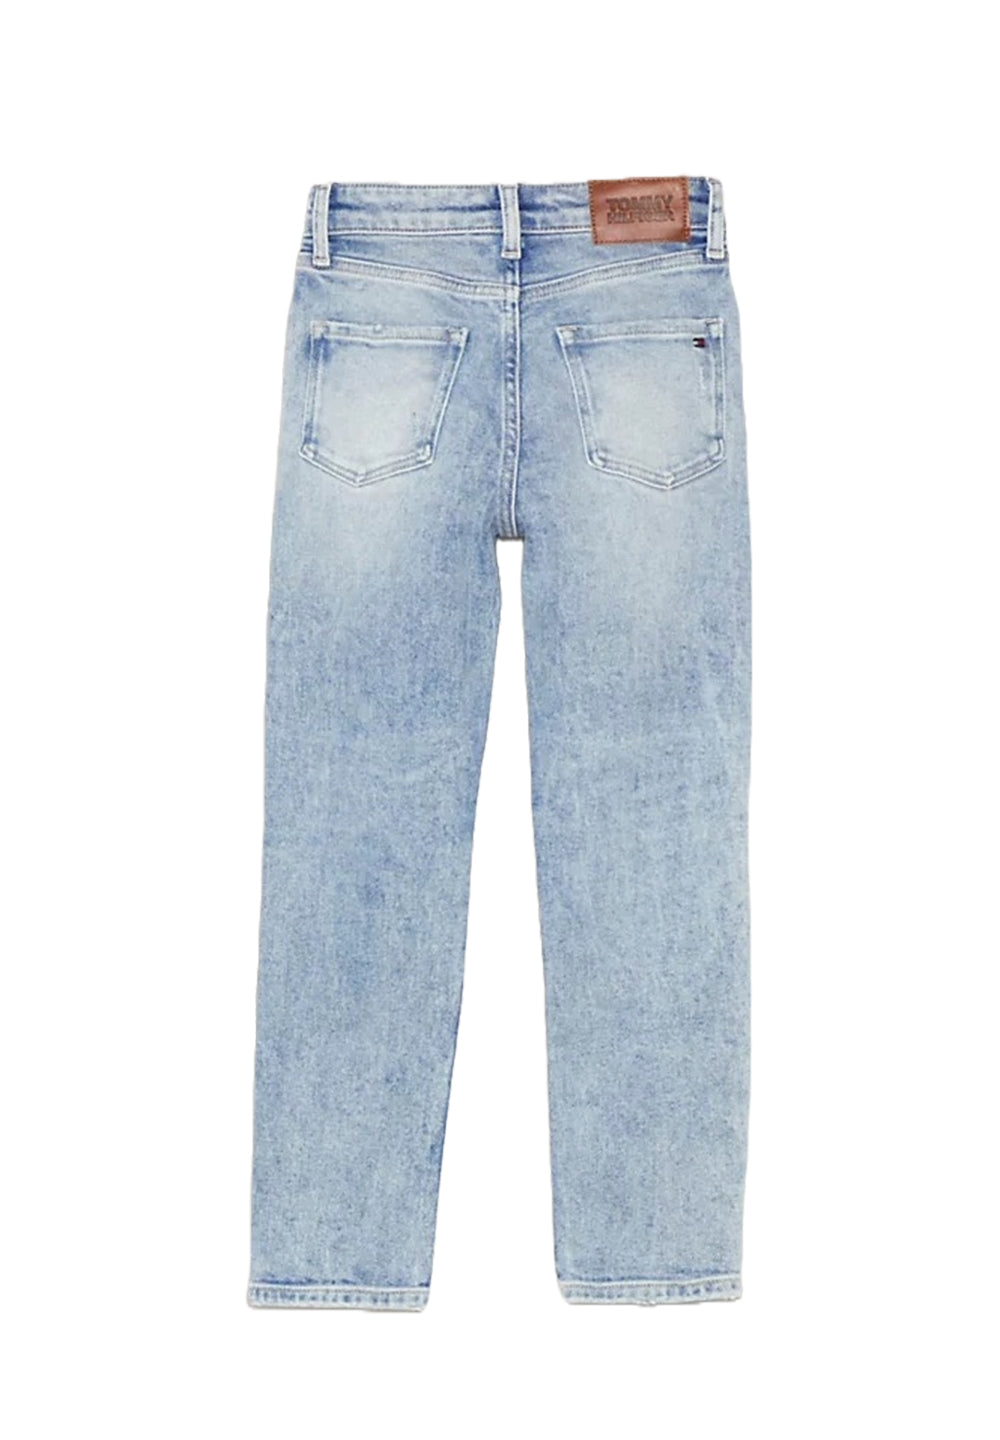 Light blue denim jeans for girls